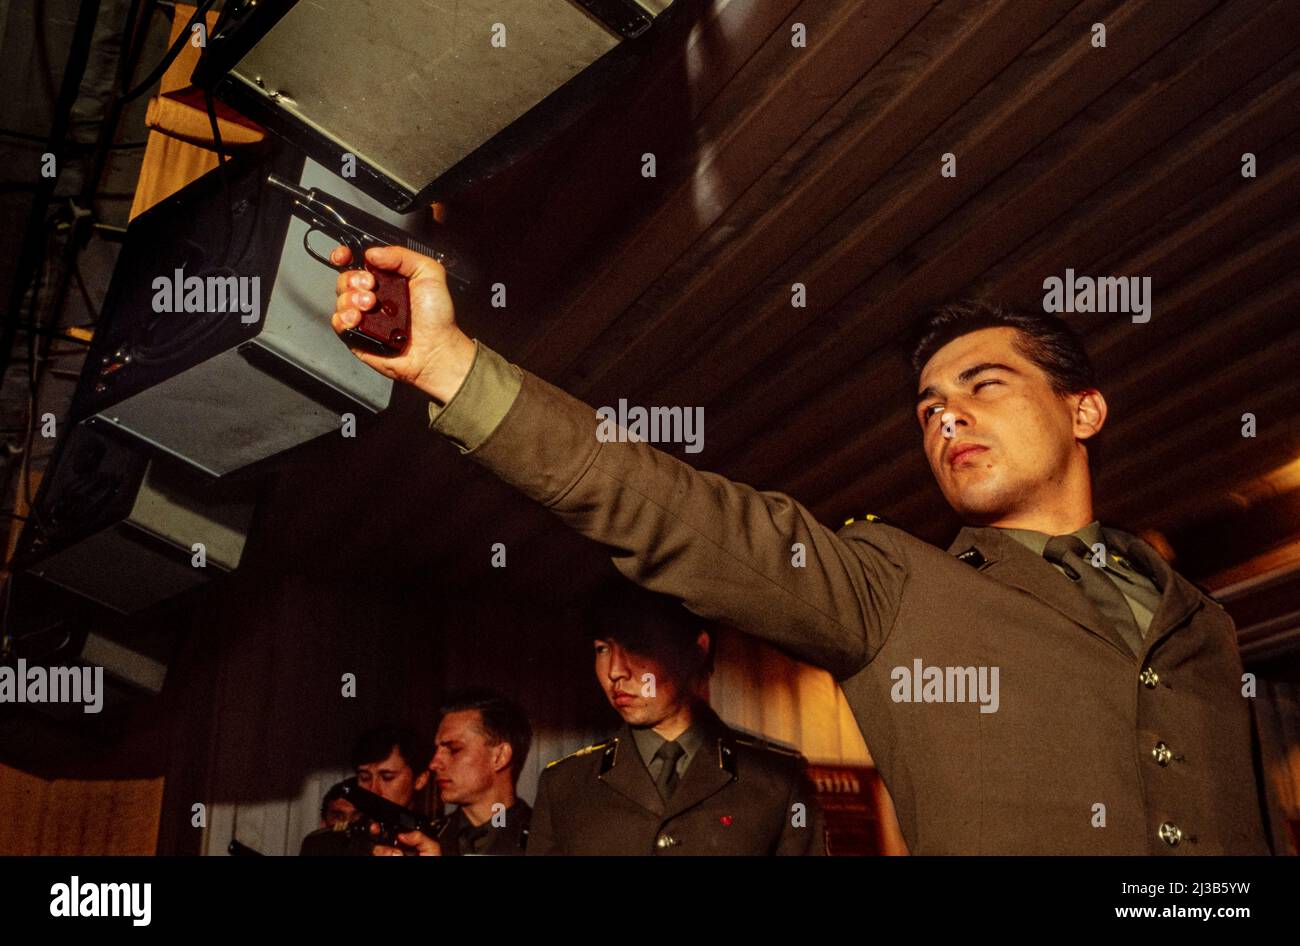 Zielpraxis in der KGB-Ausbildungsschule, Moskau, Russland, UdSSR, mit dem KGB-Standard 9mm Handfeuerwaffe 1990. Dies war das erste Mal, dass Journalisten außerhalb der UdSSR den KGB fotografieren durften. Stockfoto